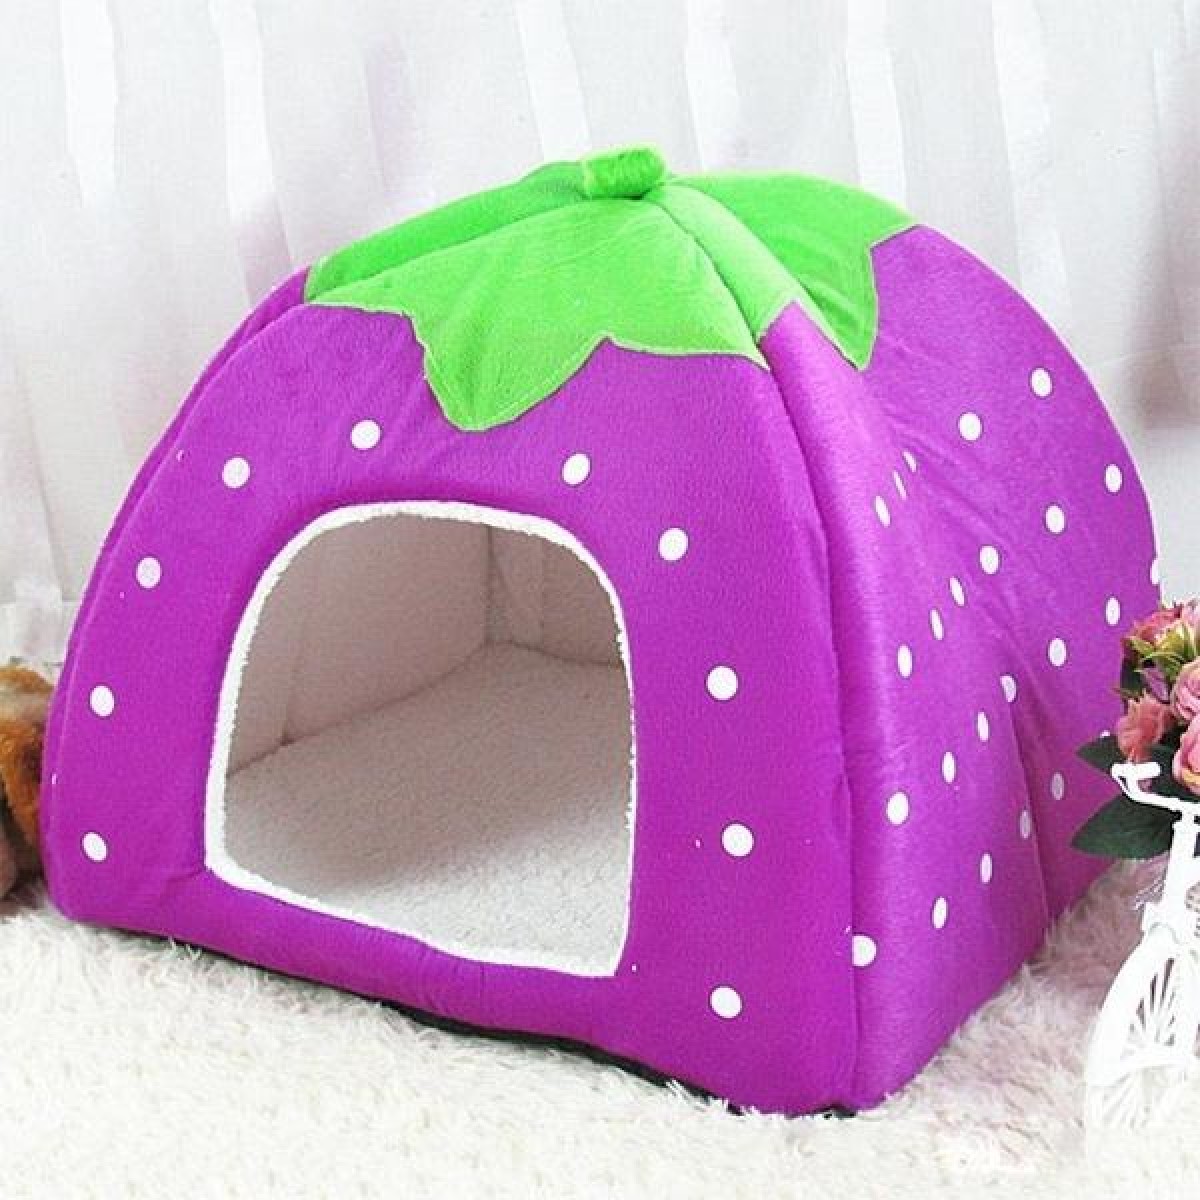 Strawberry Shaped Foldable Short Plush Pet House Nest, Size: XS